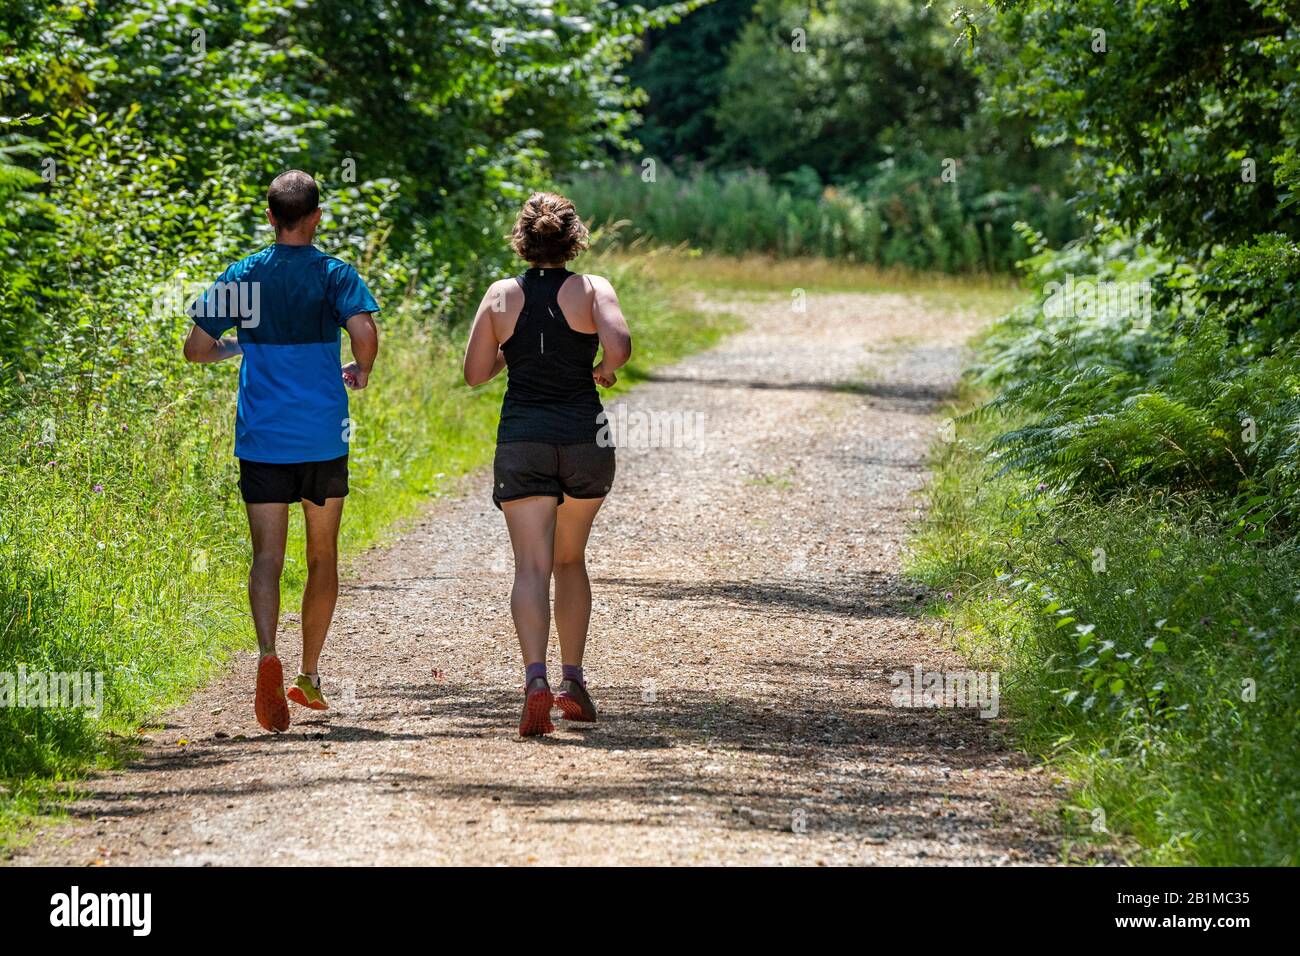 Ein Mann, eine Frau oder ein Mann und eine Frau, die laufen oder joggen, halten sich zusammen und teilen ihre Zeit miteinander. Stockfoto